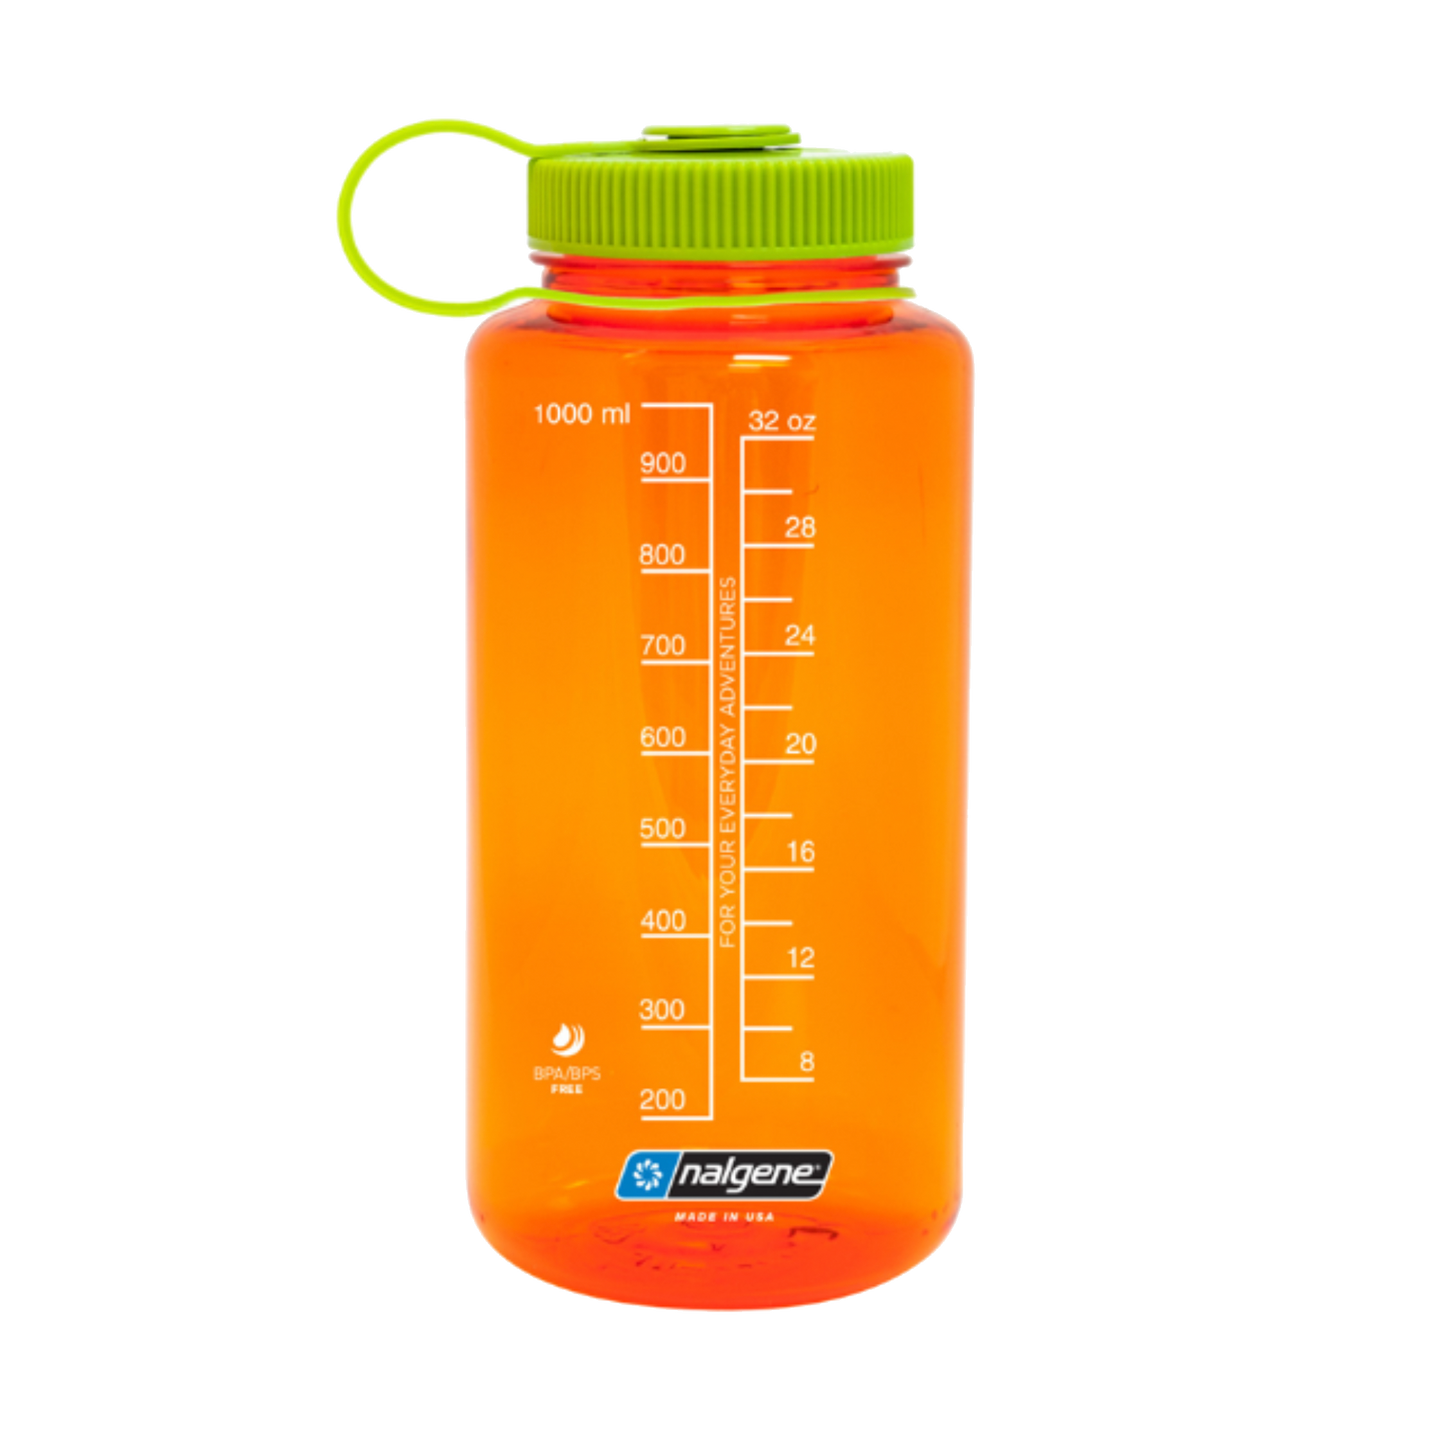 EKIN Nalgene Water Bottle Orange